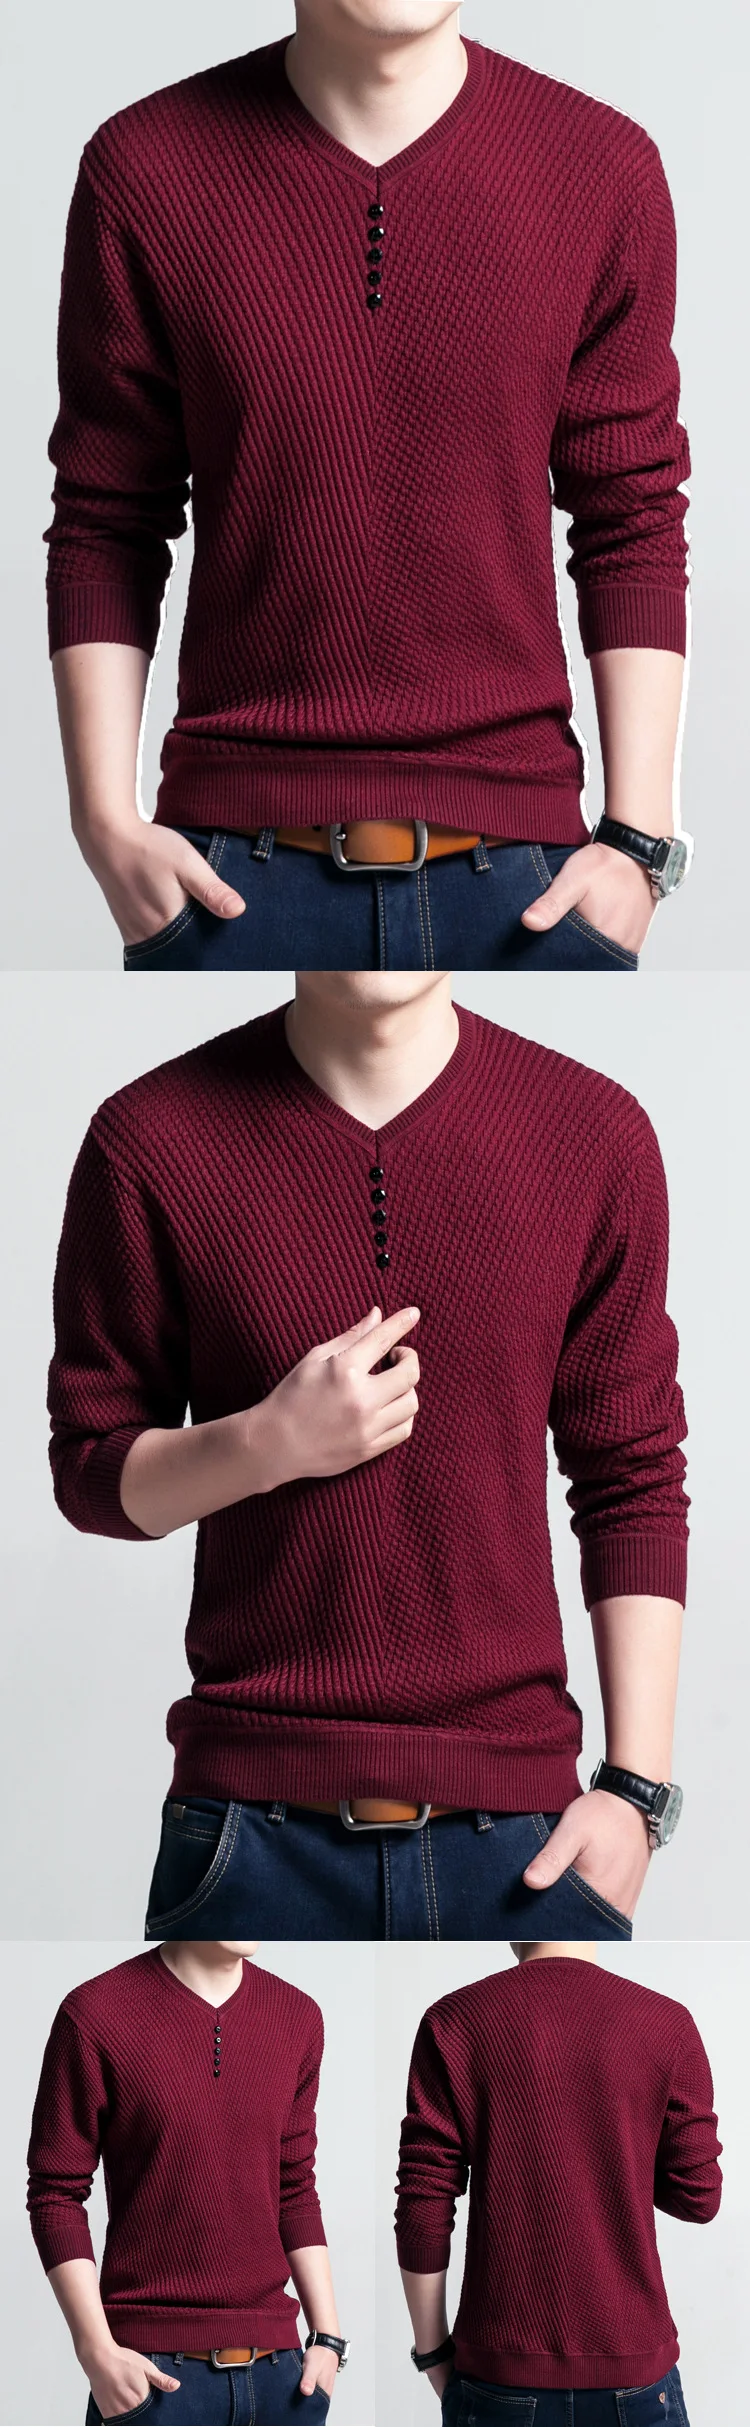 NaranjaSabor Мужской Повседневный свитер осенний мужской однотонный трикотаж модный тонкий мужской свитер с v-образным вырезом брендовая одежда N537